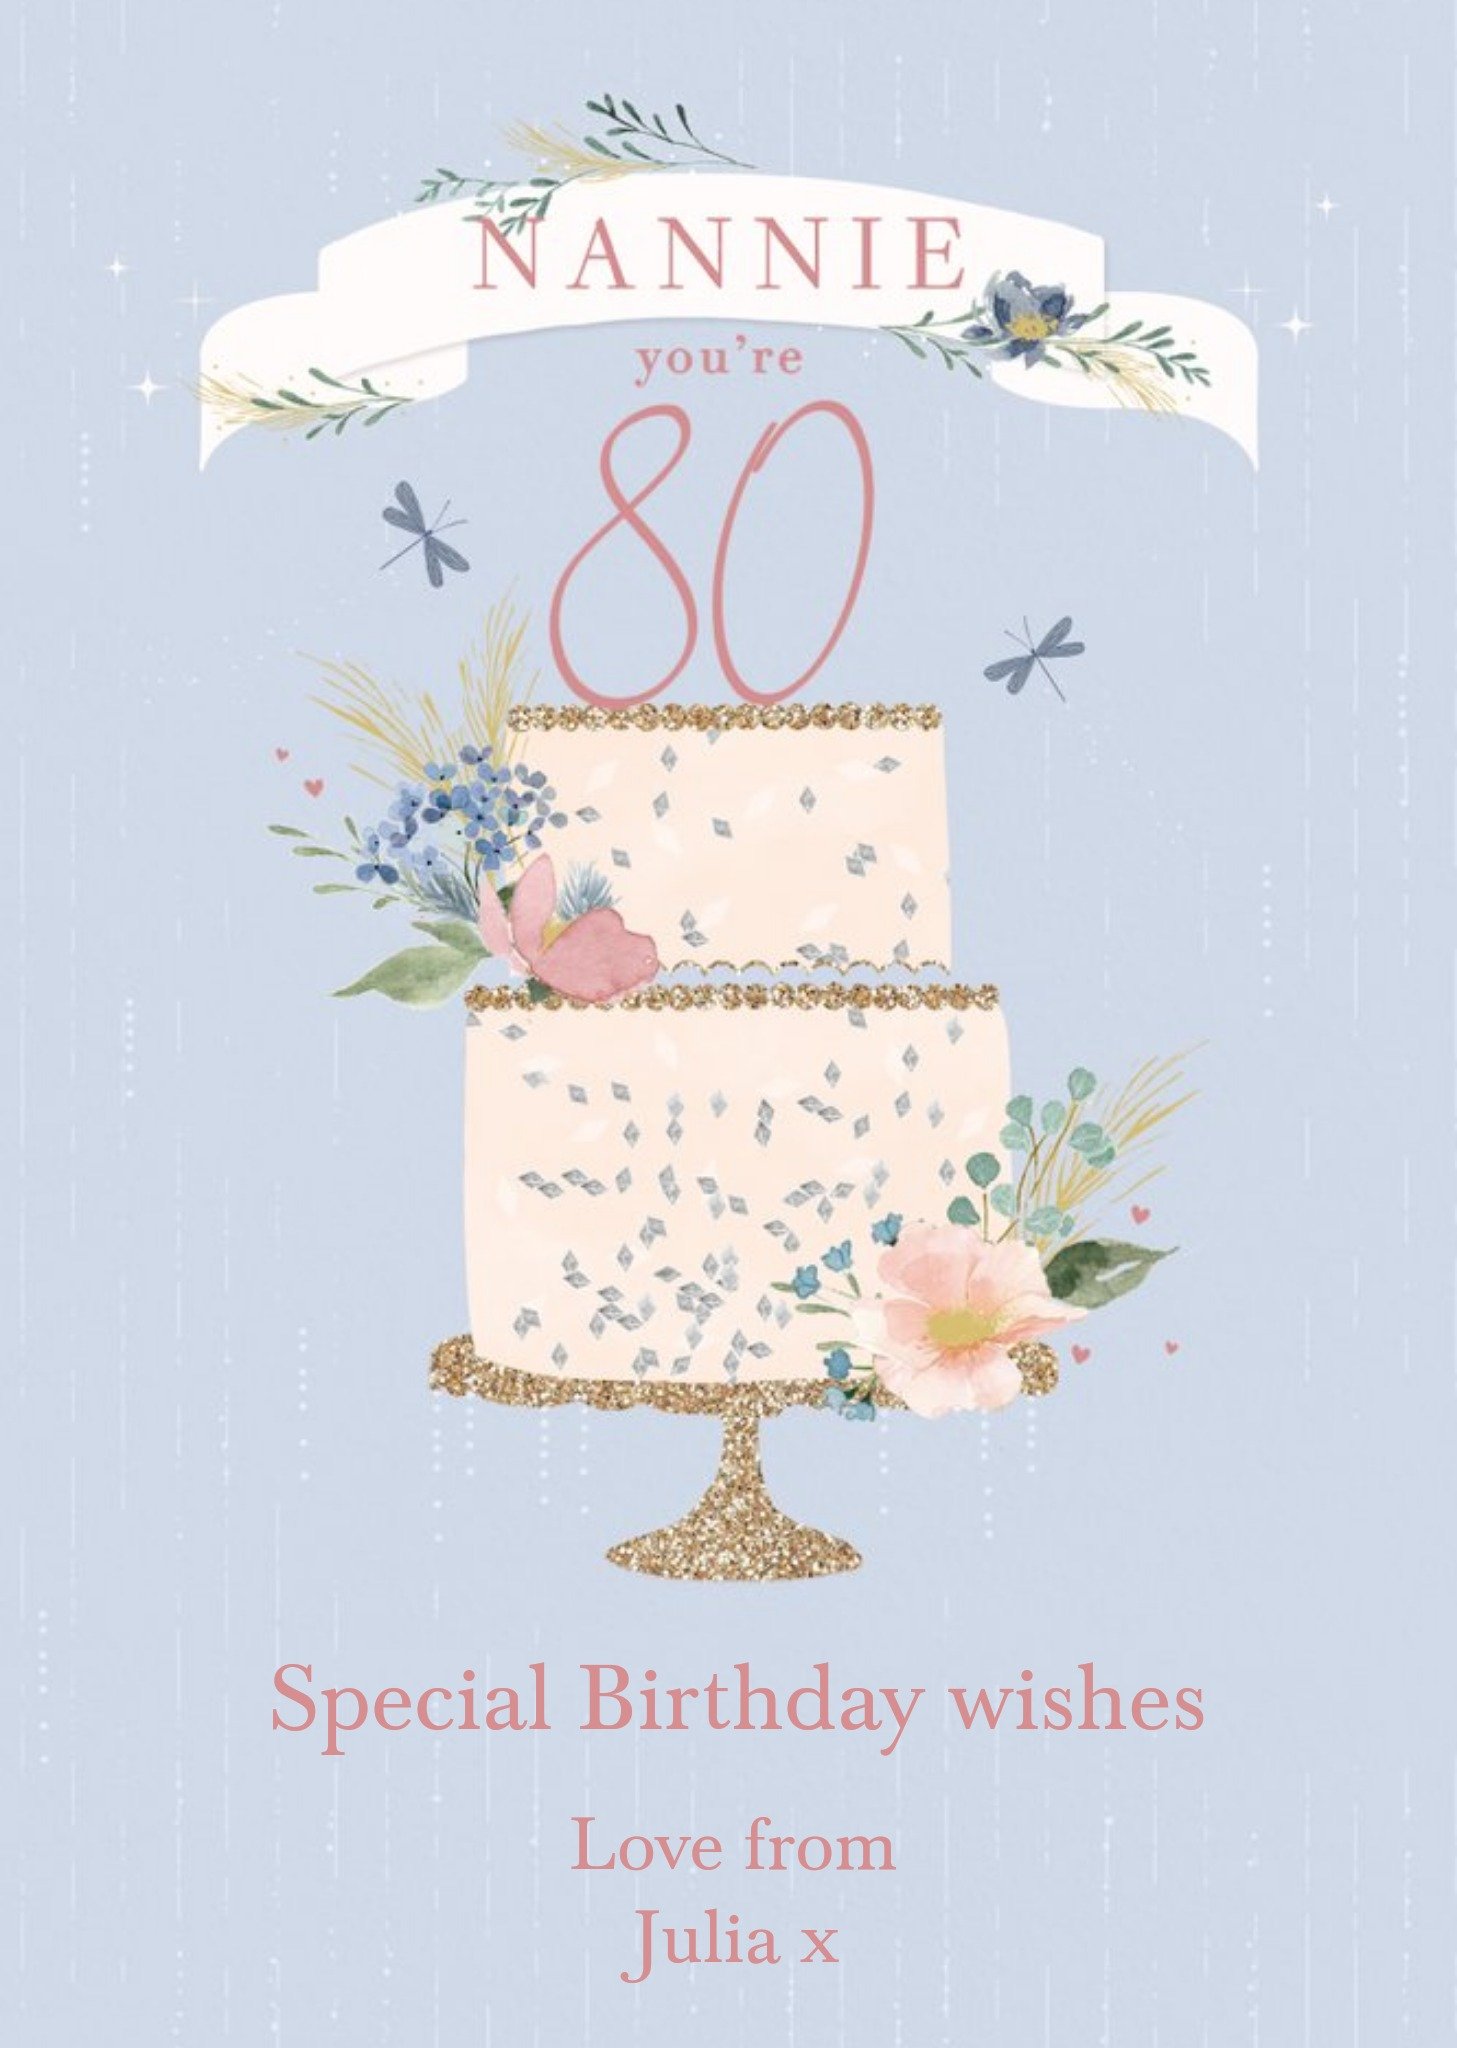 Moonpig Clintons Nannie Watercolour Floral Cake 80th Birthday Card Ecard